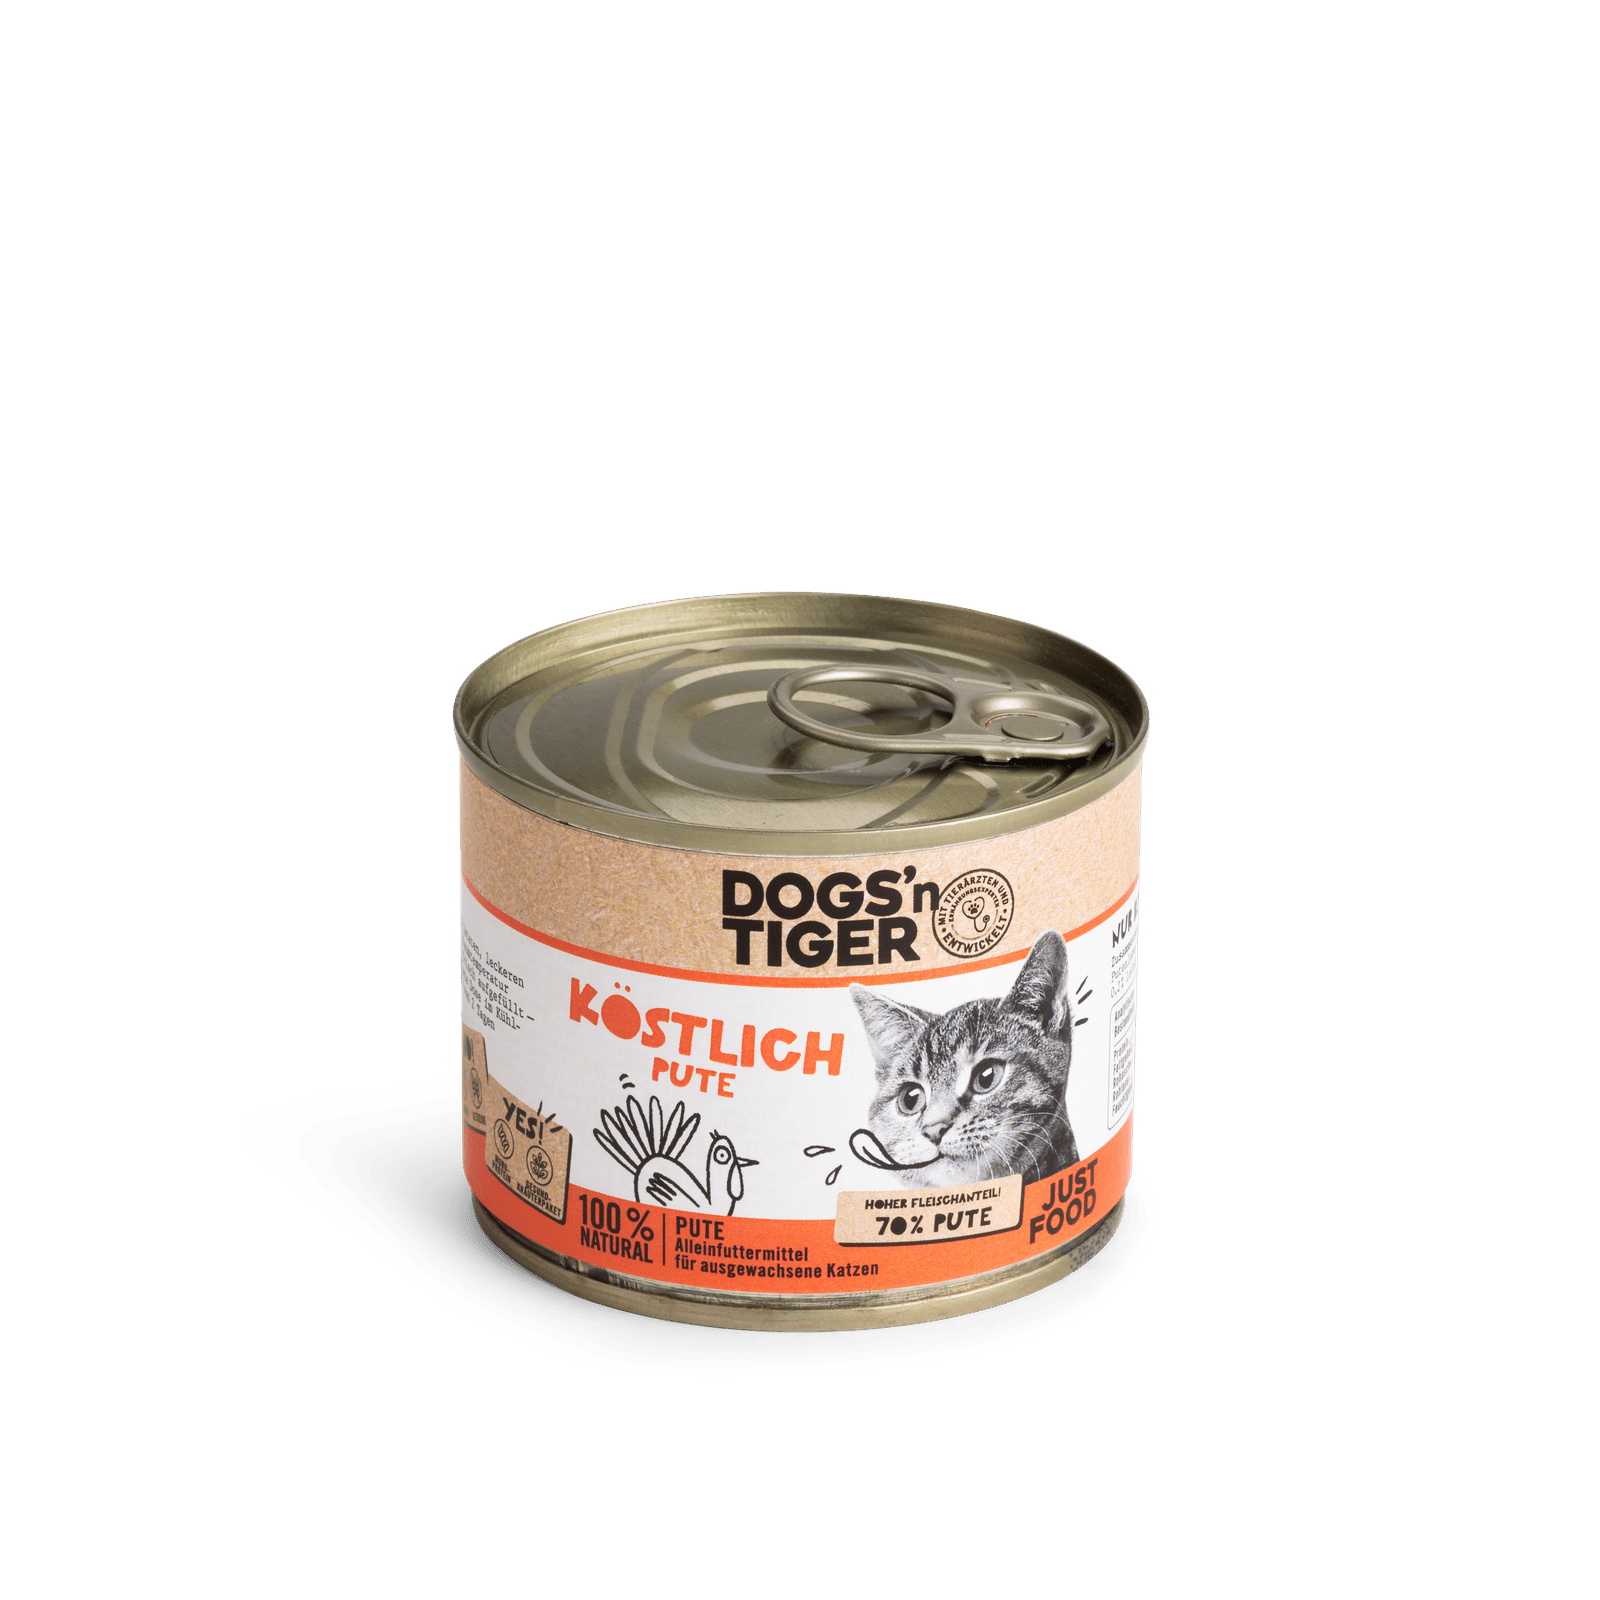 Artikel mit dem Namen Dogs'n Tiger Katze Köstlich im Shop von zoo.de , dem Onlineshop für nachhaltiges Hundefutter und Katzenfutter.